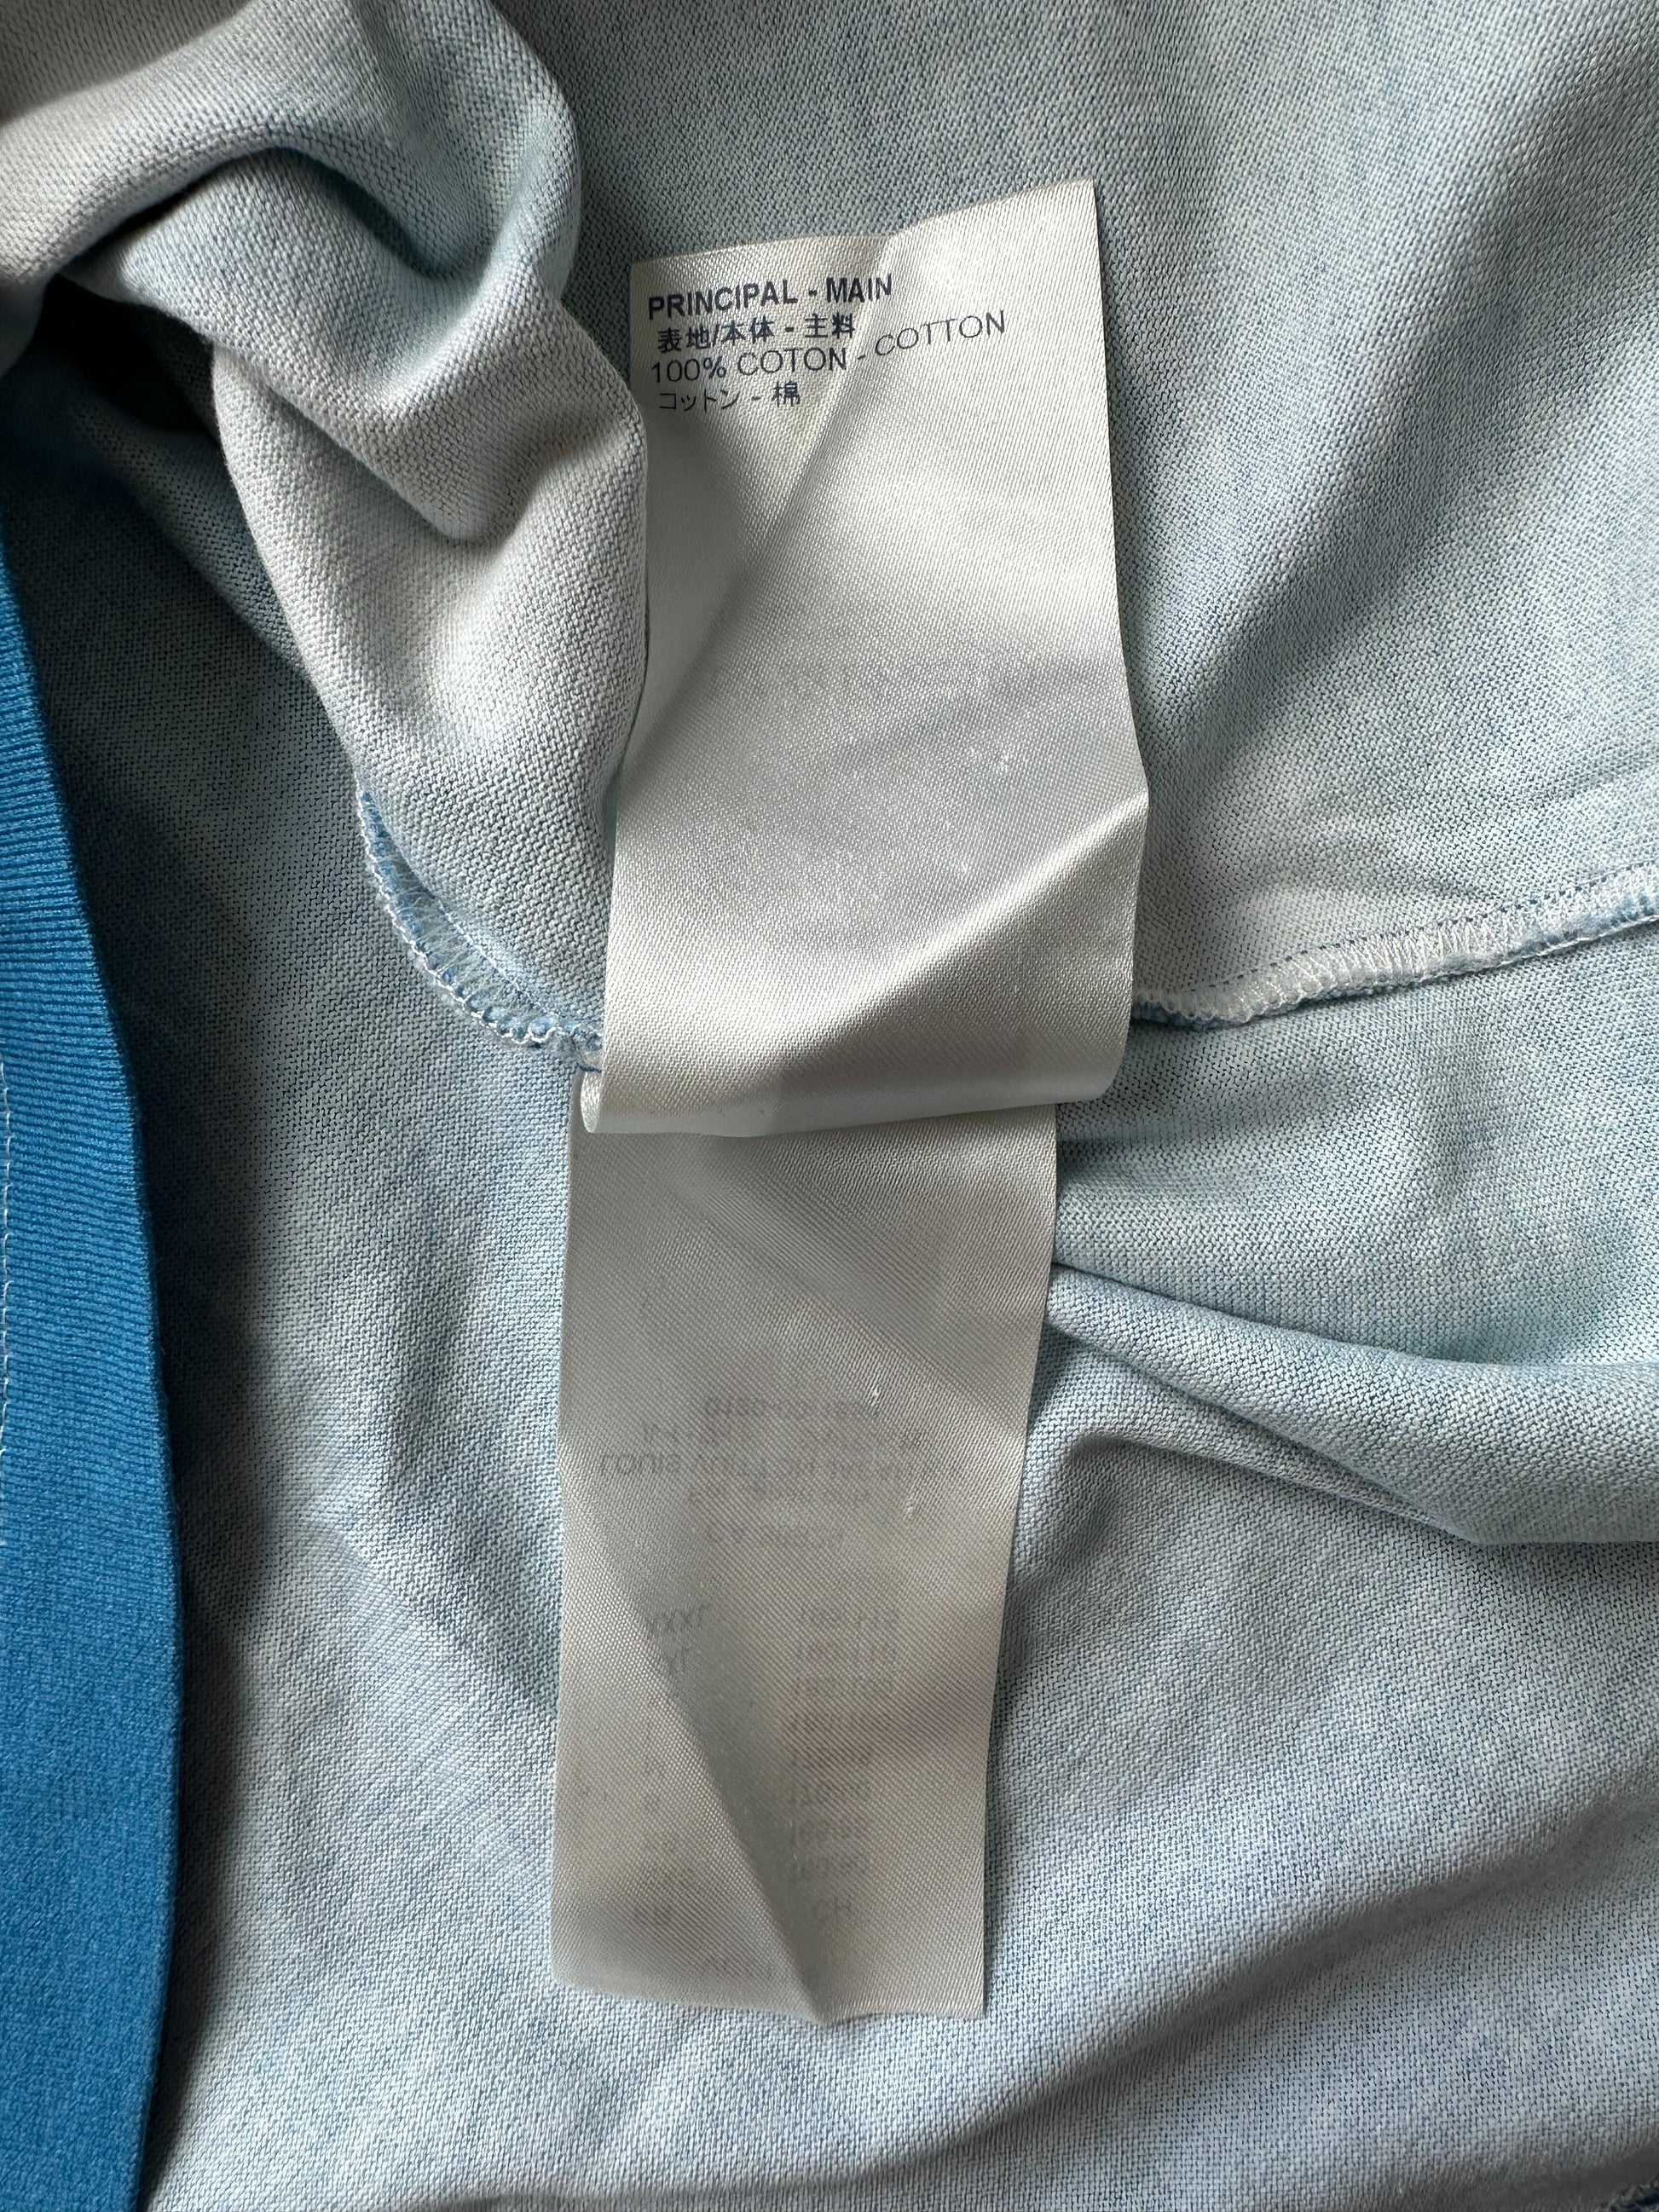 Louis Vuitton Blue Cloud Print Cotton Long Sleeve Shirt S Louis